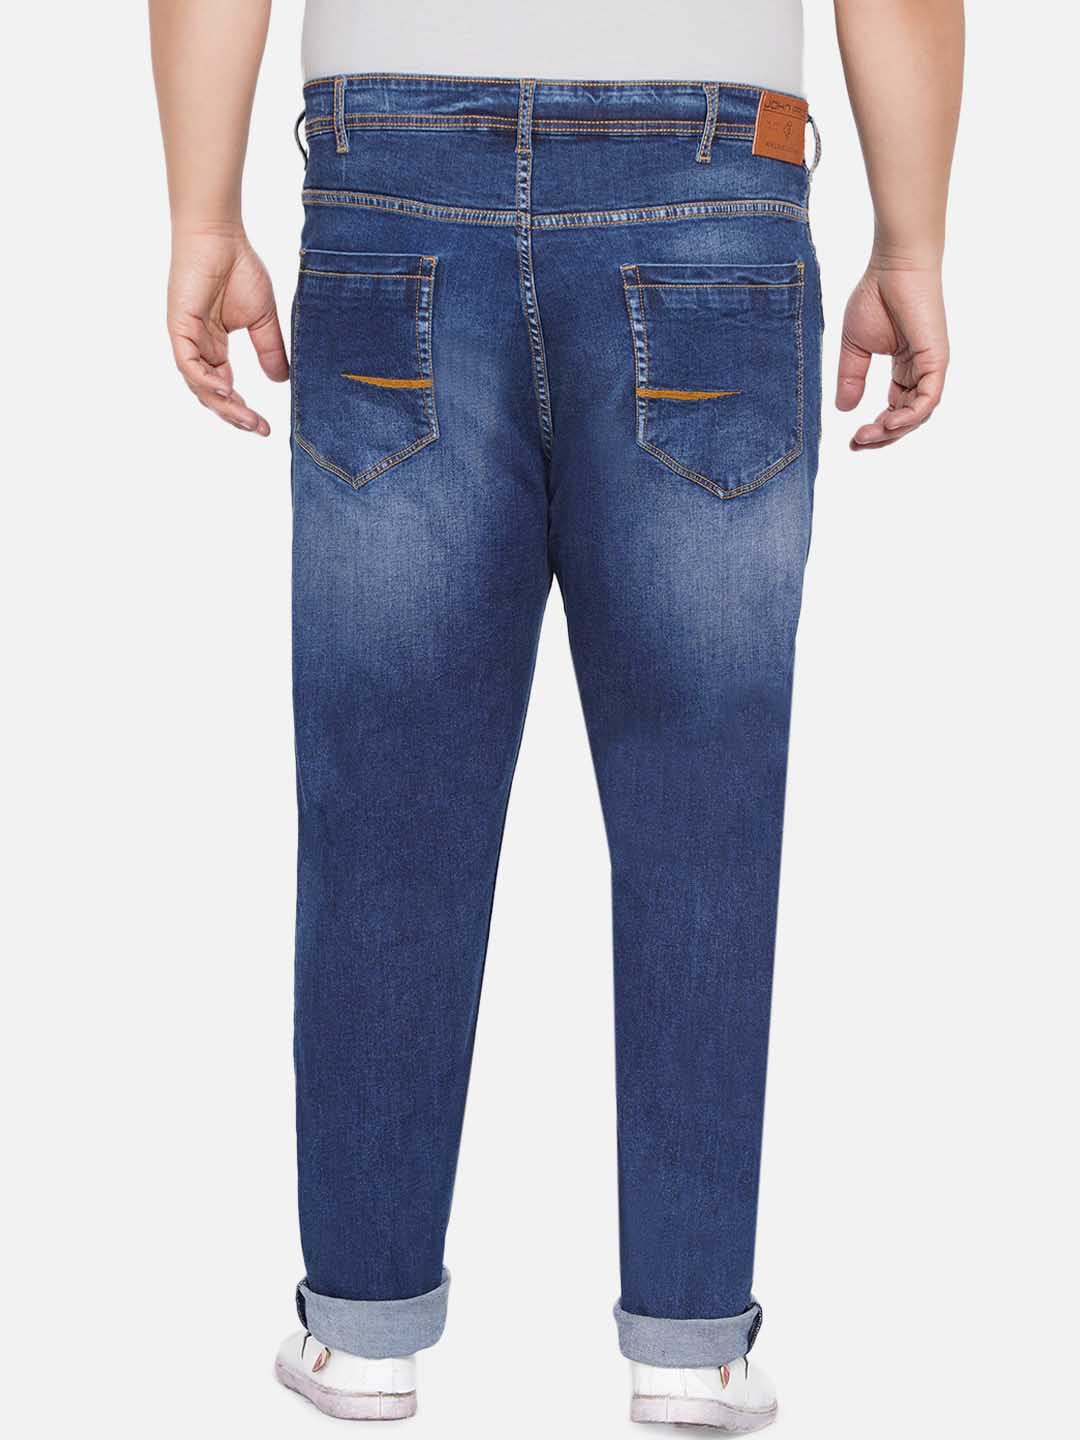 bottomwear/jeans/EJPJ25043/ejpj25043-5.jpg